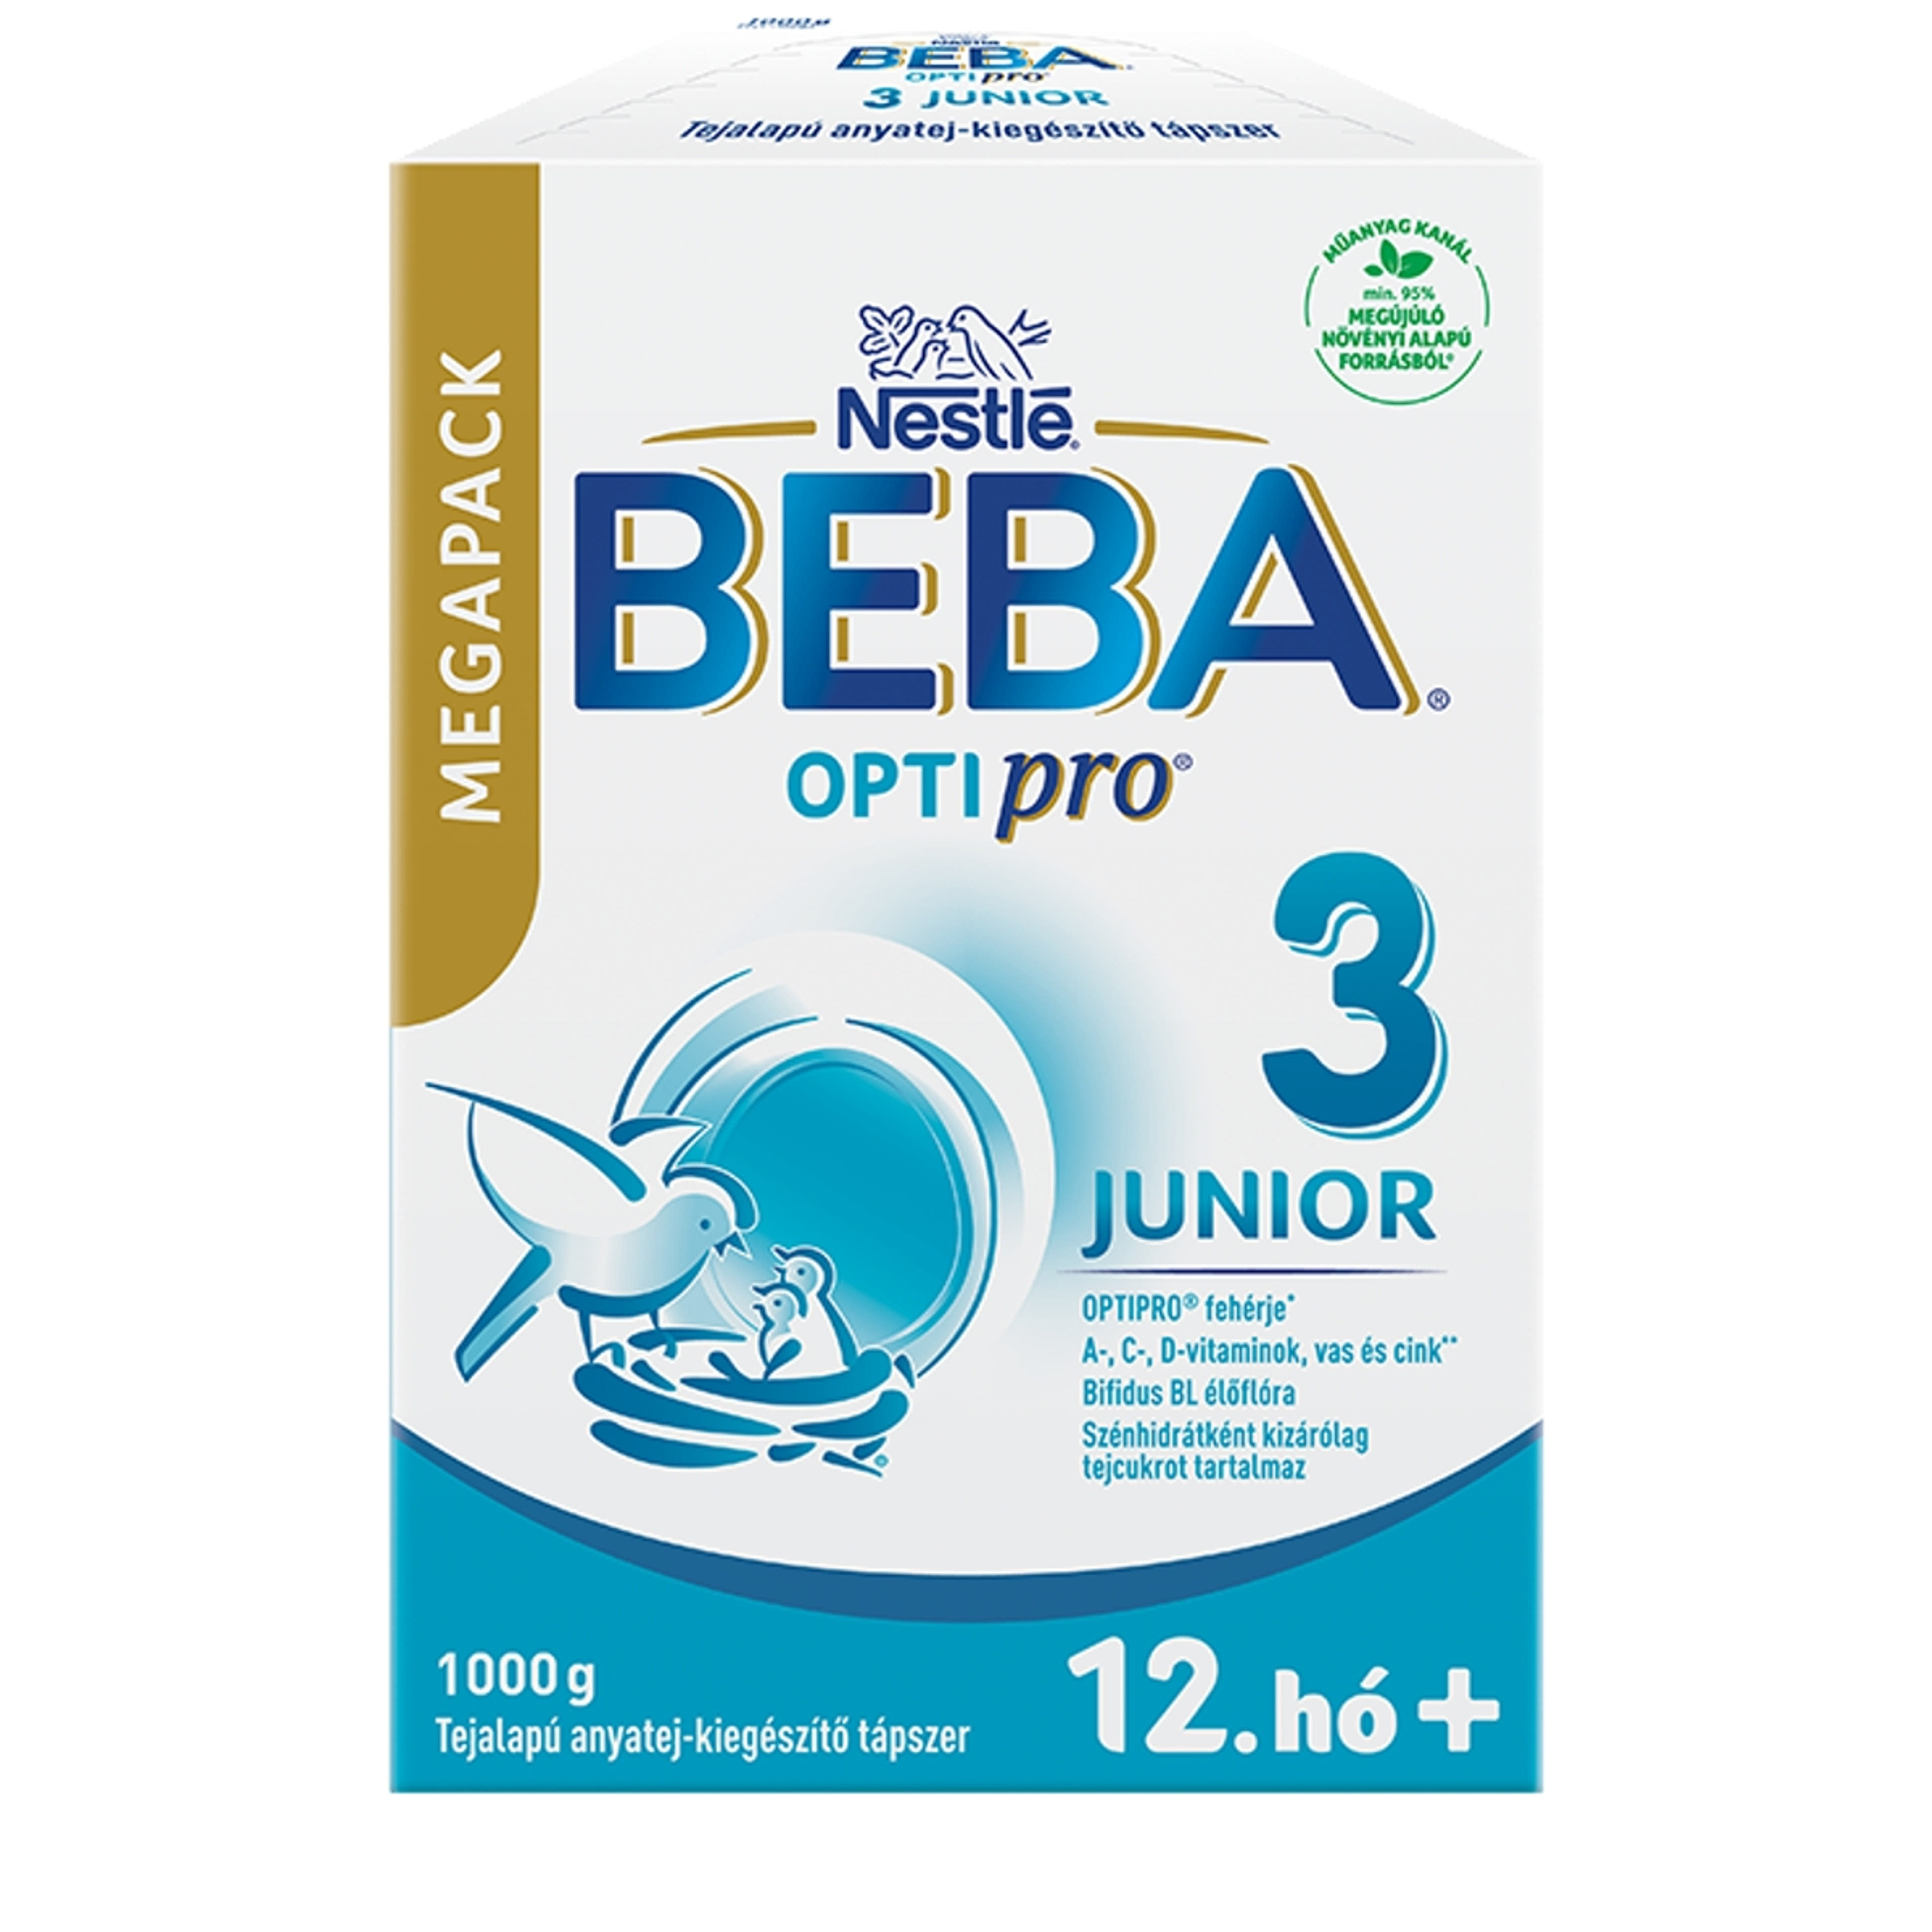 Beba Optipro 3 Junior tejalapú anyatej-kiegészítő tápszer 12 hónapos kortól - 1000 g